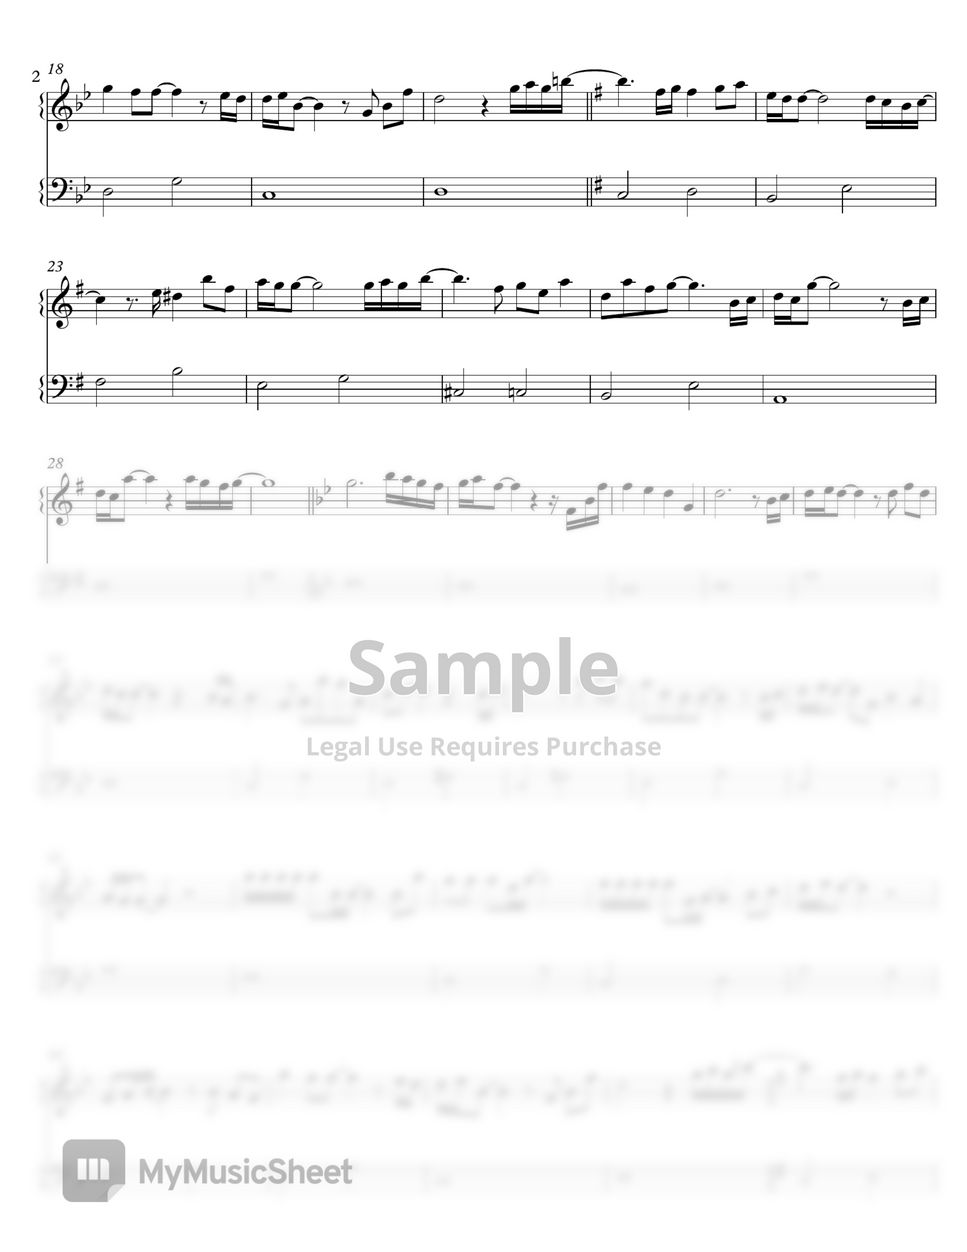 musiciscode Baka Mitai Sheet Music (Leadsheet) in Bb Major - Download &  Print - SKU: MN0234736